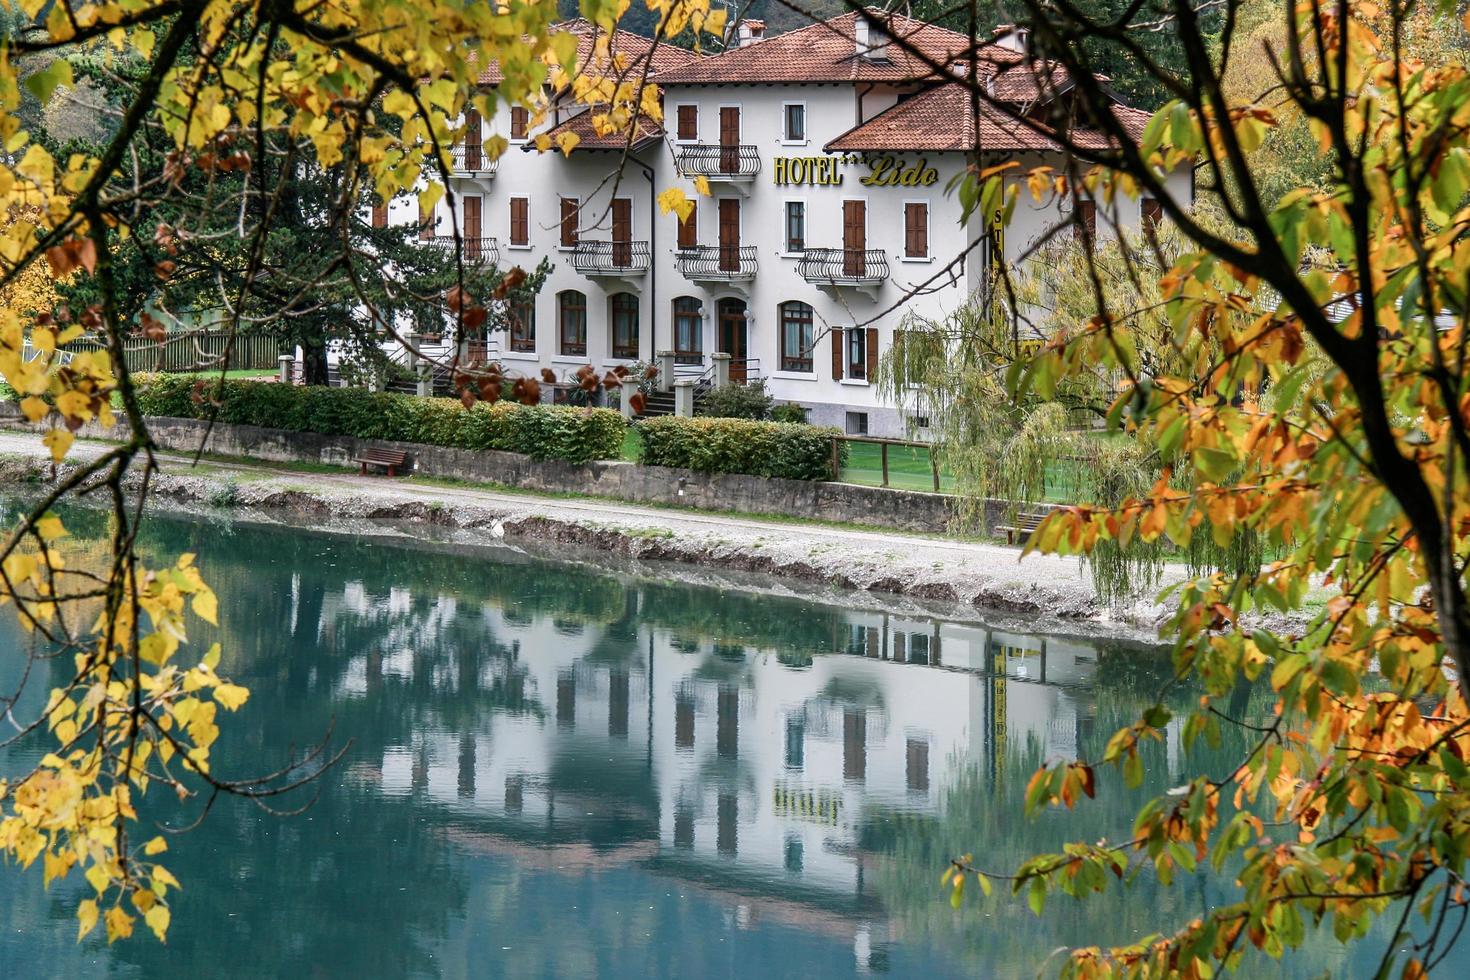 lago di ledro, italia, 2006. hotel lido pieve di ledro en la orilla del lago foto